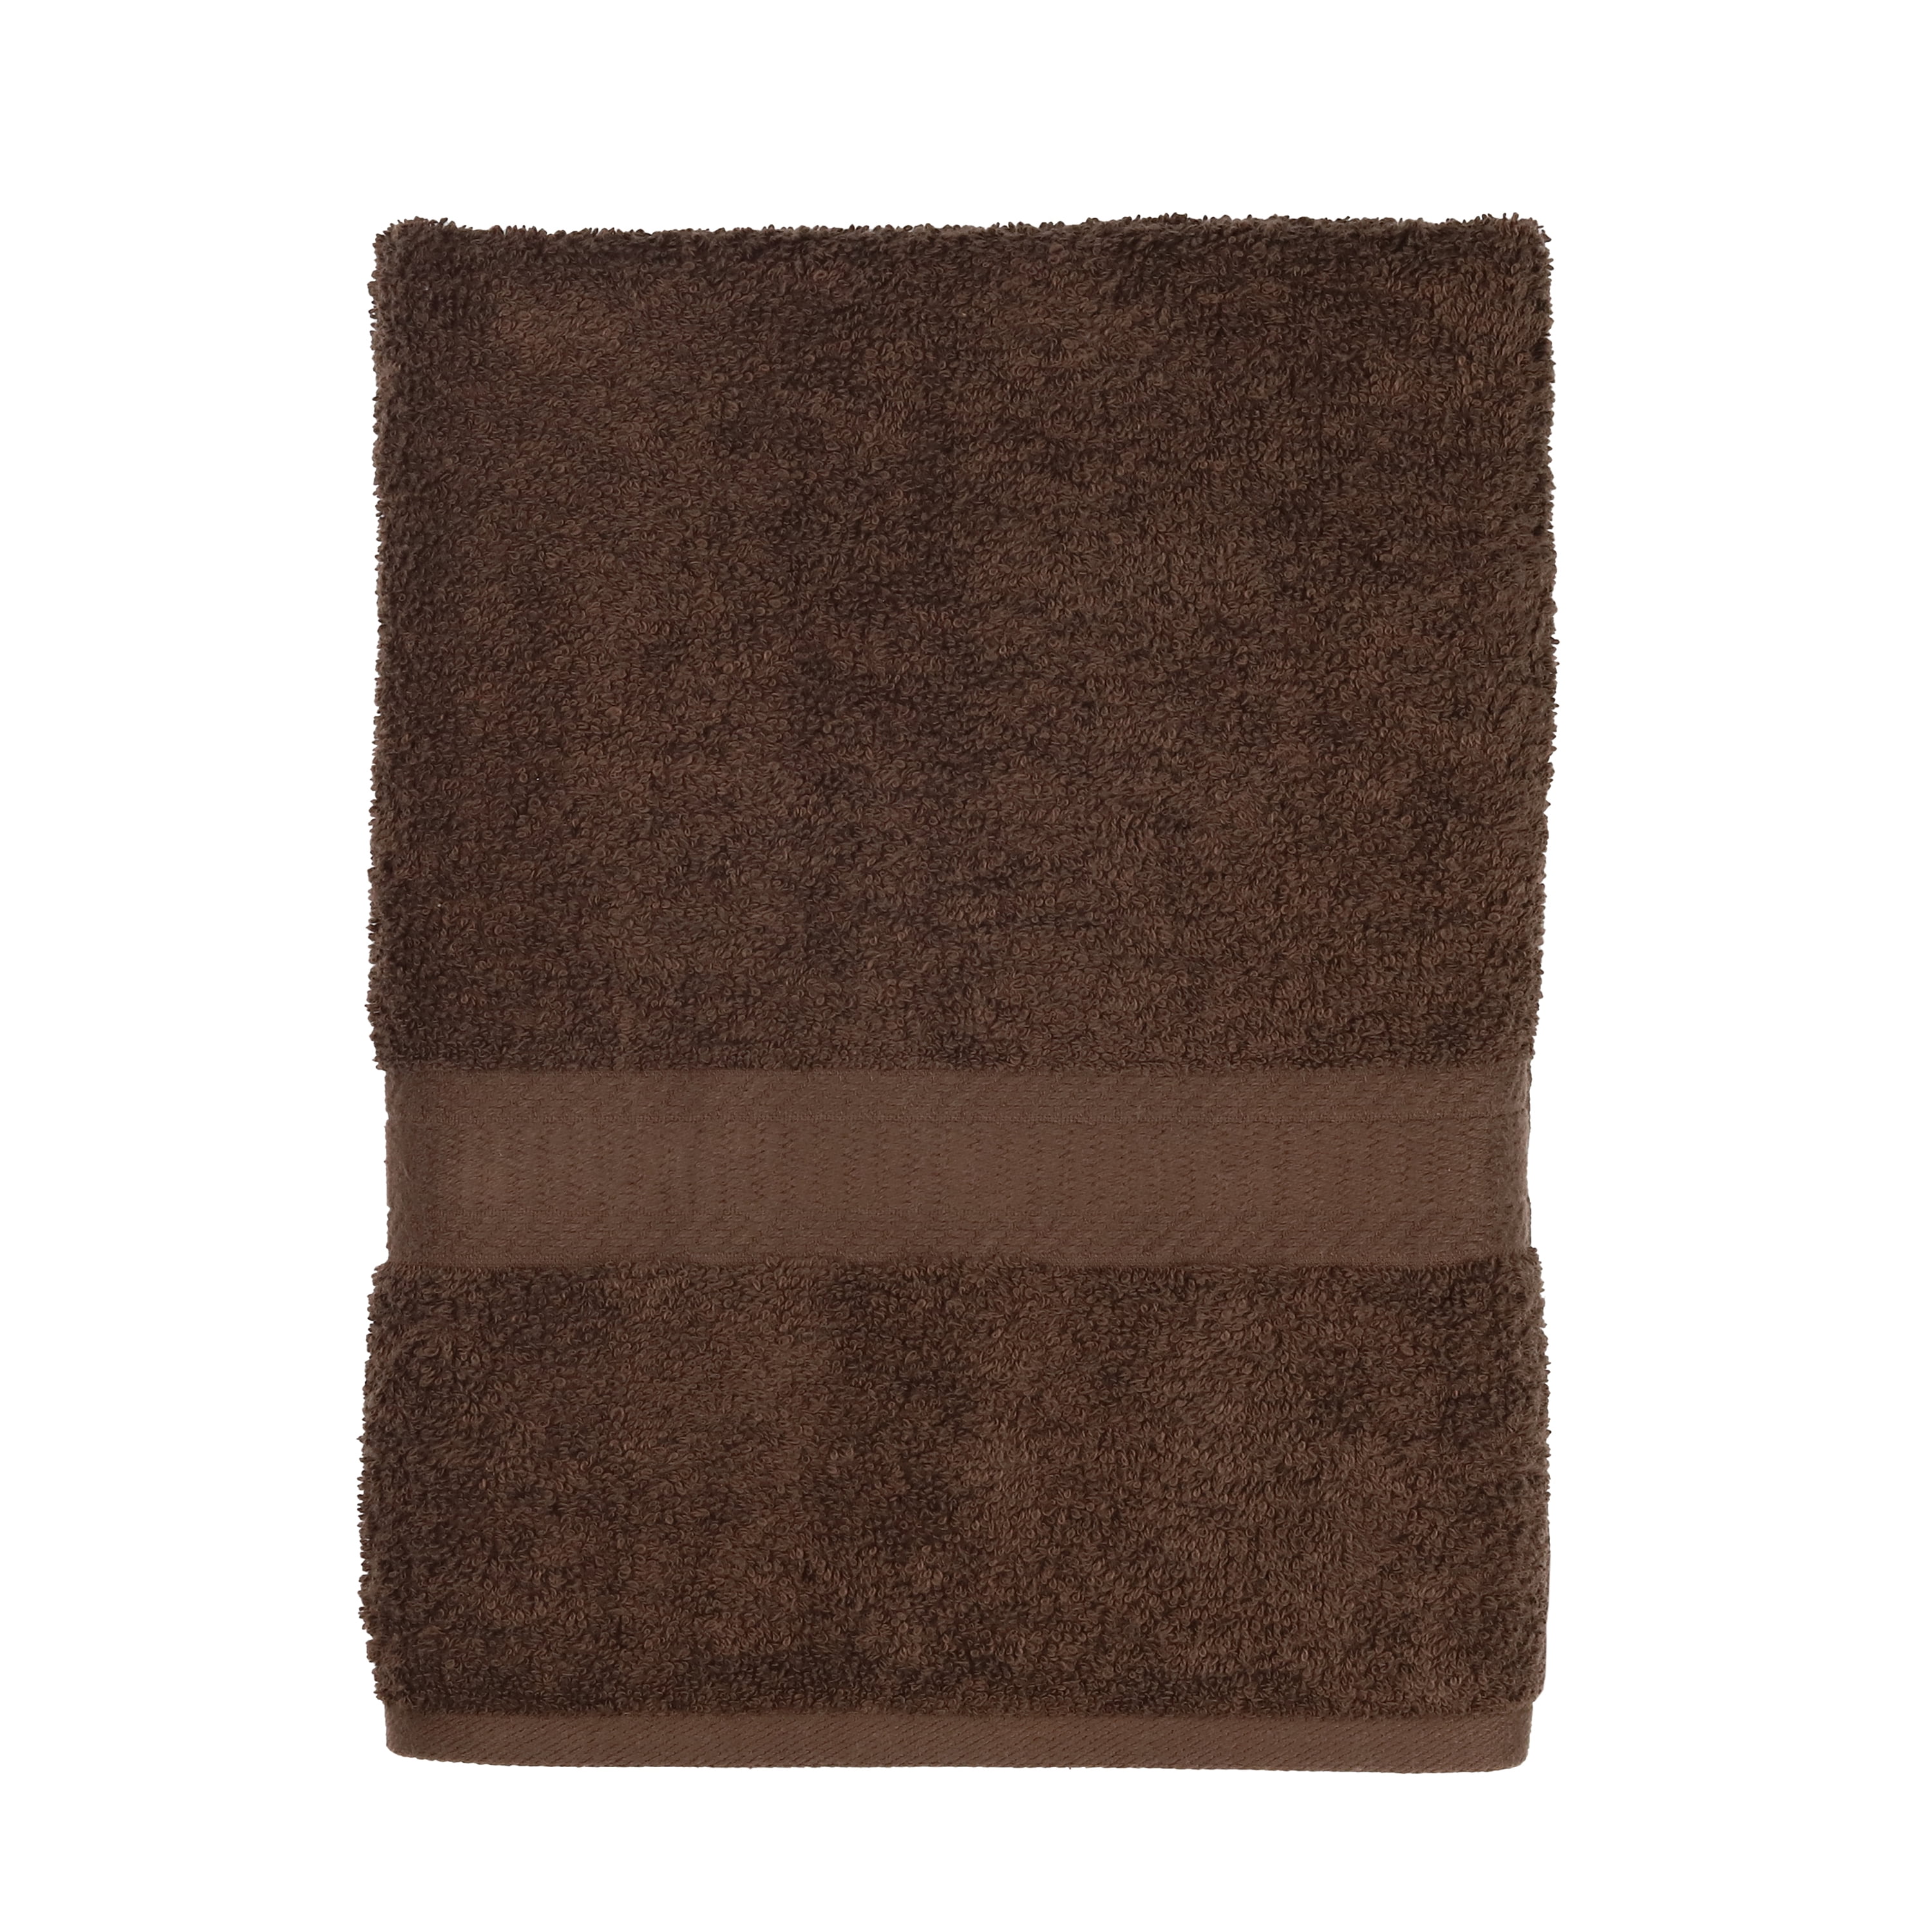 Details about   Solid 6-Piece Bath Towel Set Brown Basket 